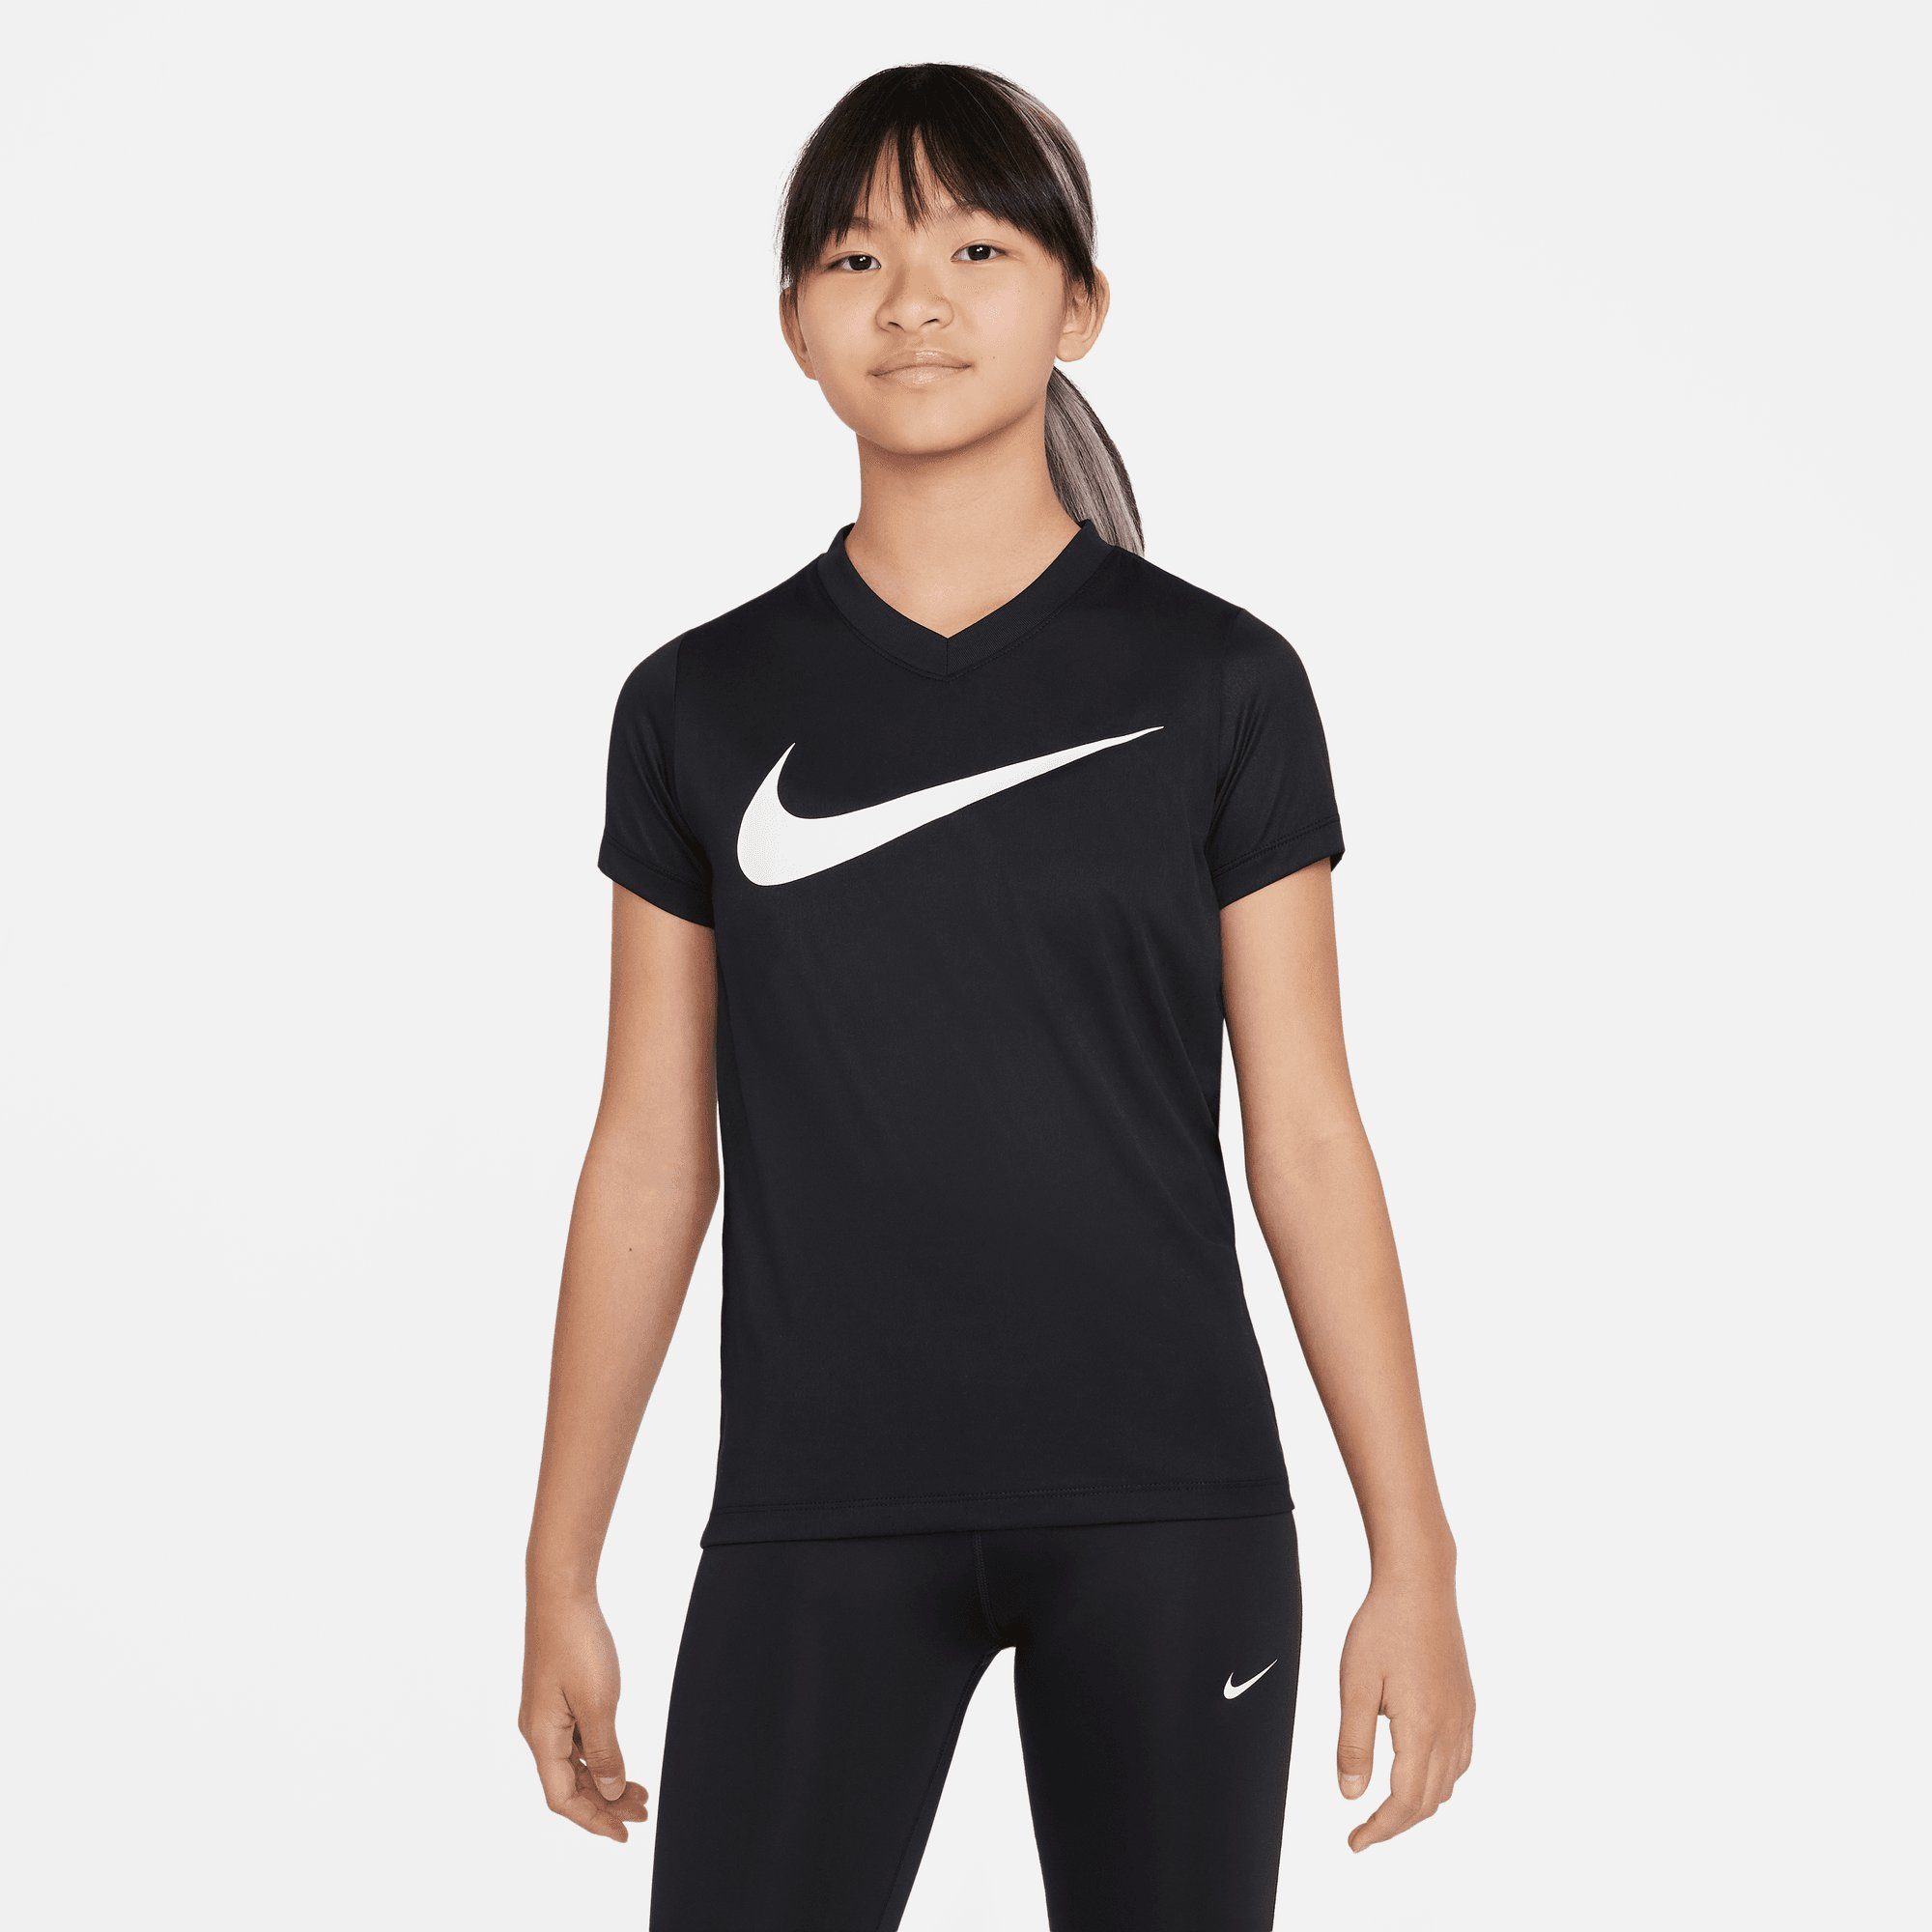 Das ist ein Fachgeschäft! Nike Trainingsshirt DRI-FIT LEGEND KIDS' V-NECK (GIRLS) BLACK/WHITE T-SHIRT BIG TRAINING